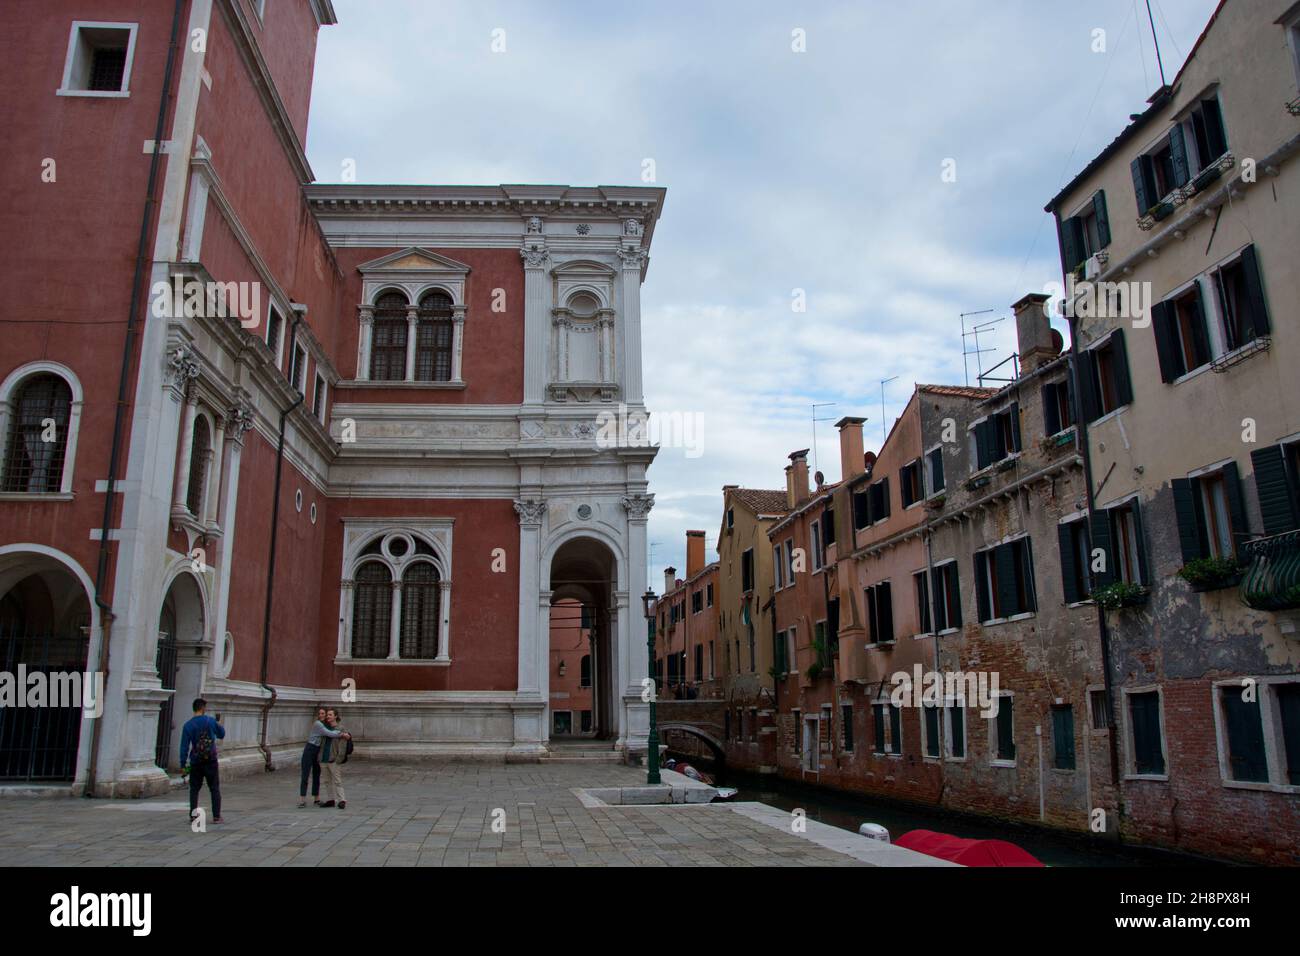 Ein Paar posiert vor einem Palast in Venedig Stock Photo